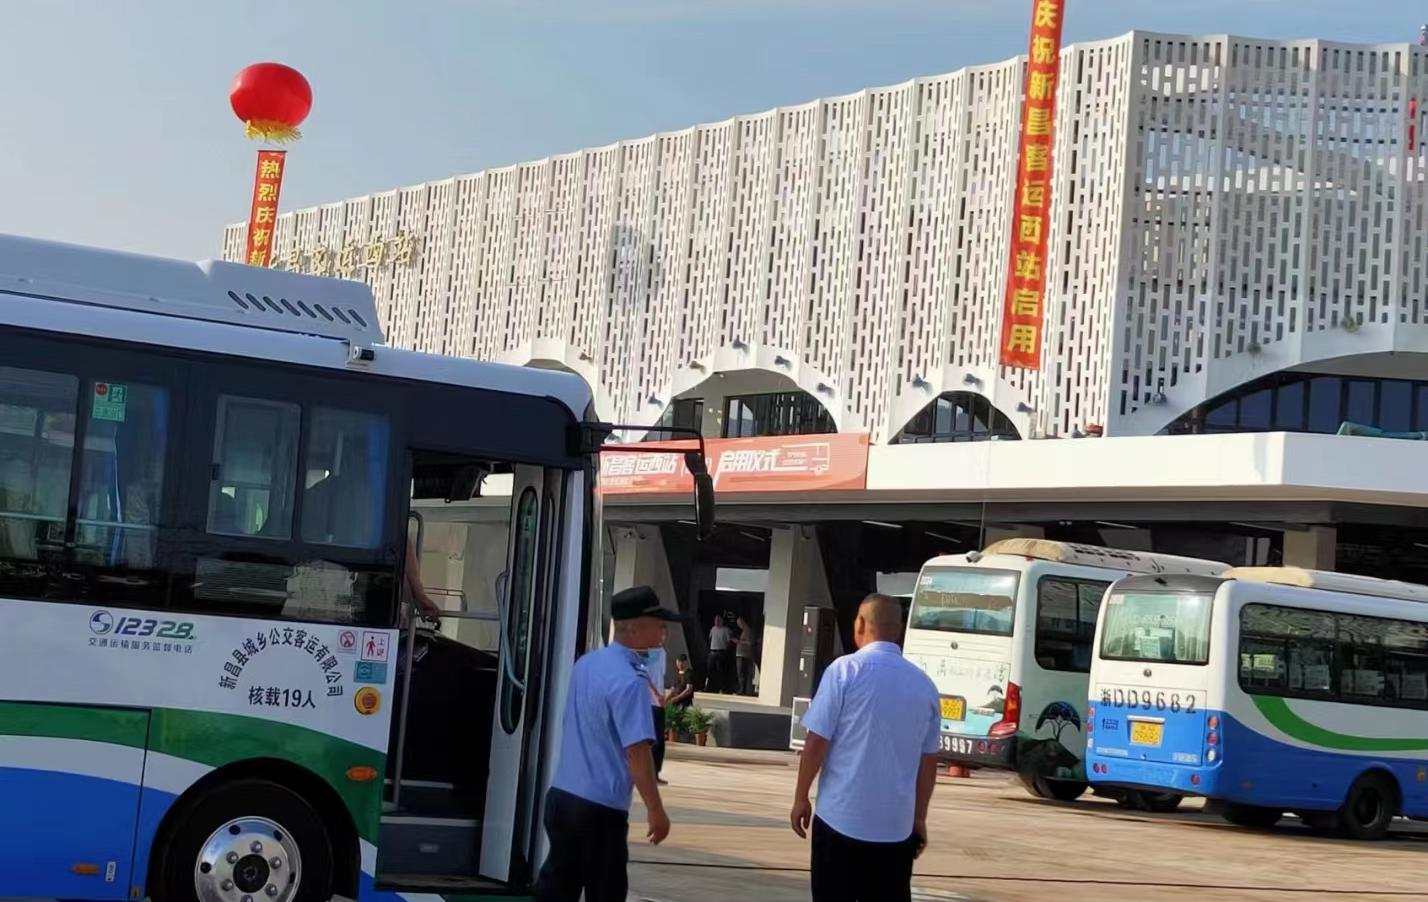 浙江新昌澄潭公交枢纽中心UHPC镂空板造型定制安装